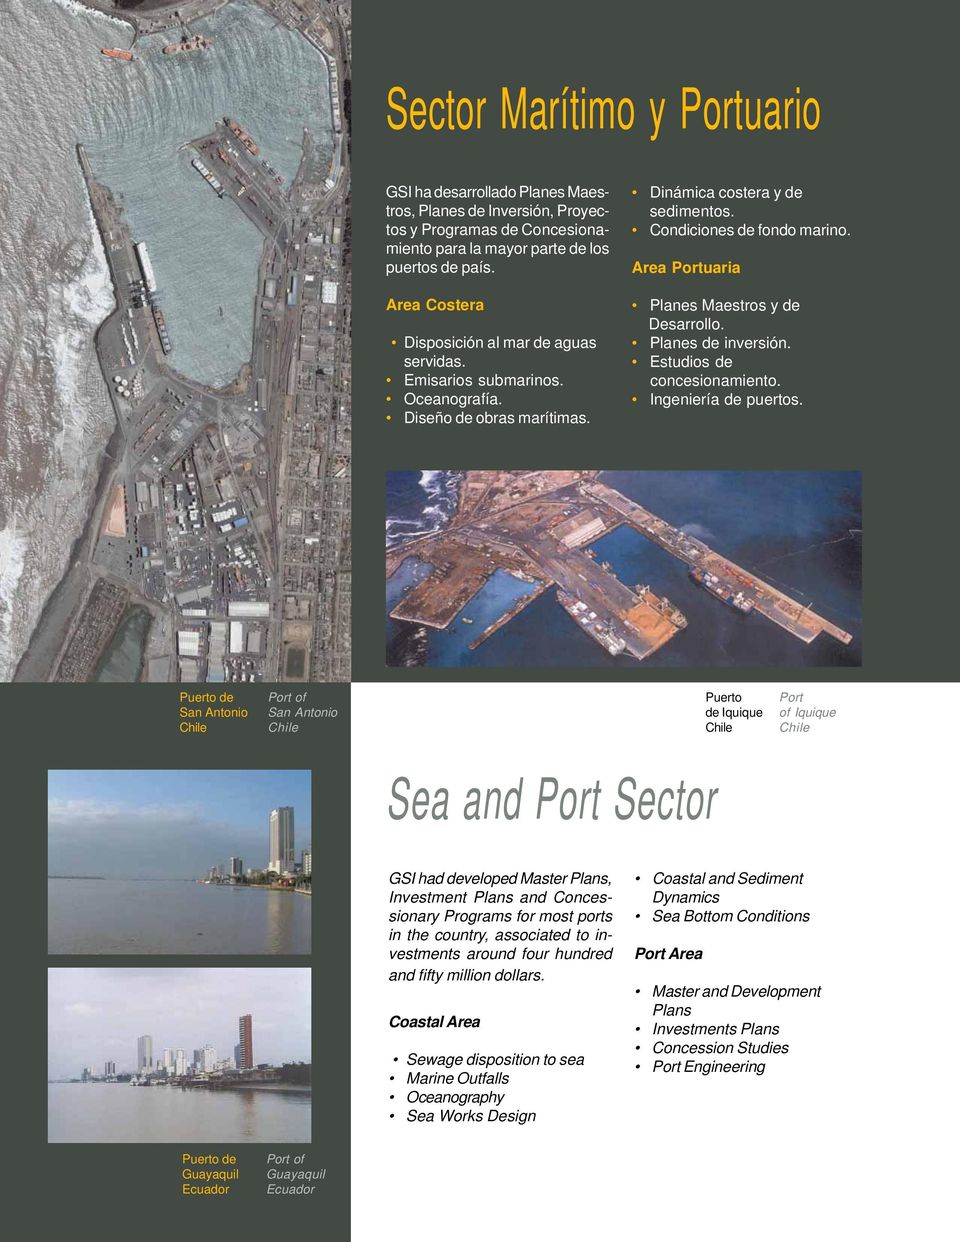 Area Portuaria Planes Maestros y de Desarrollo. Planes de inversión. Estudios de concesionamiento. Ingeniería de puertos.